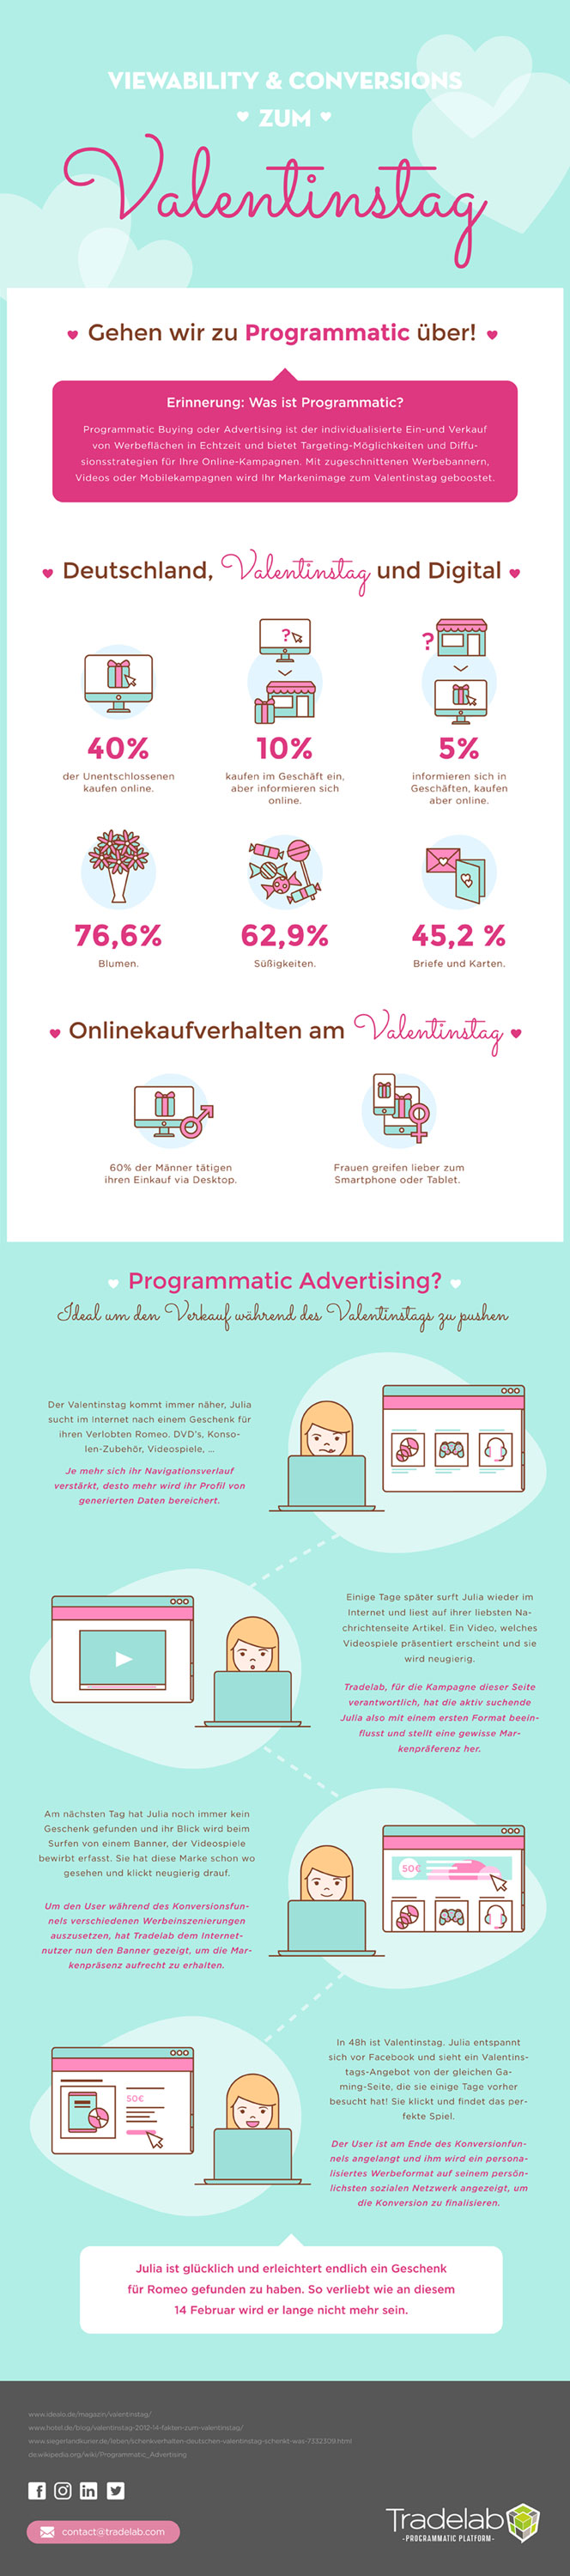 Infografik: Online-Kaufverhalten zum Valentinstag in Deutschland